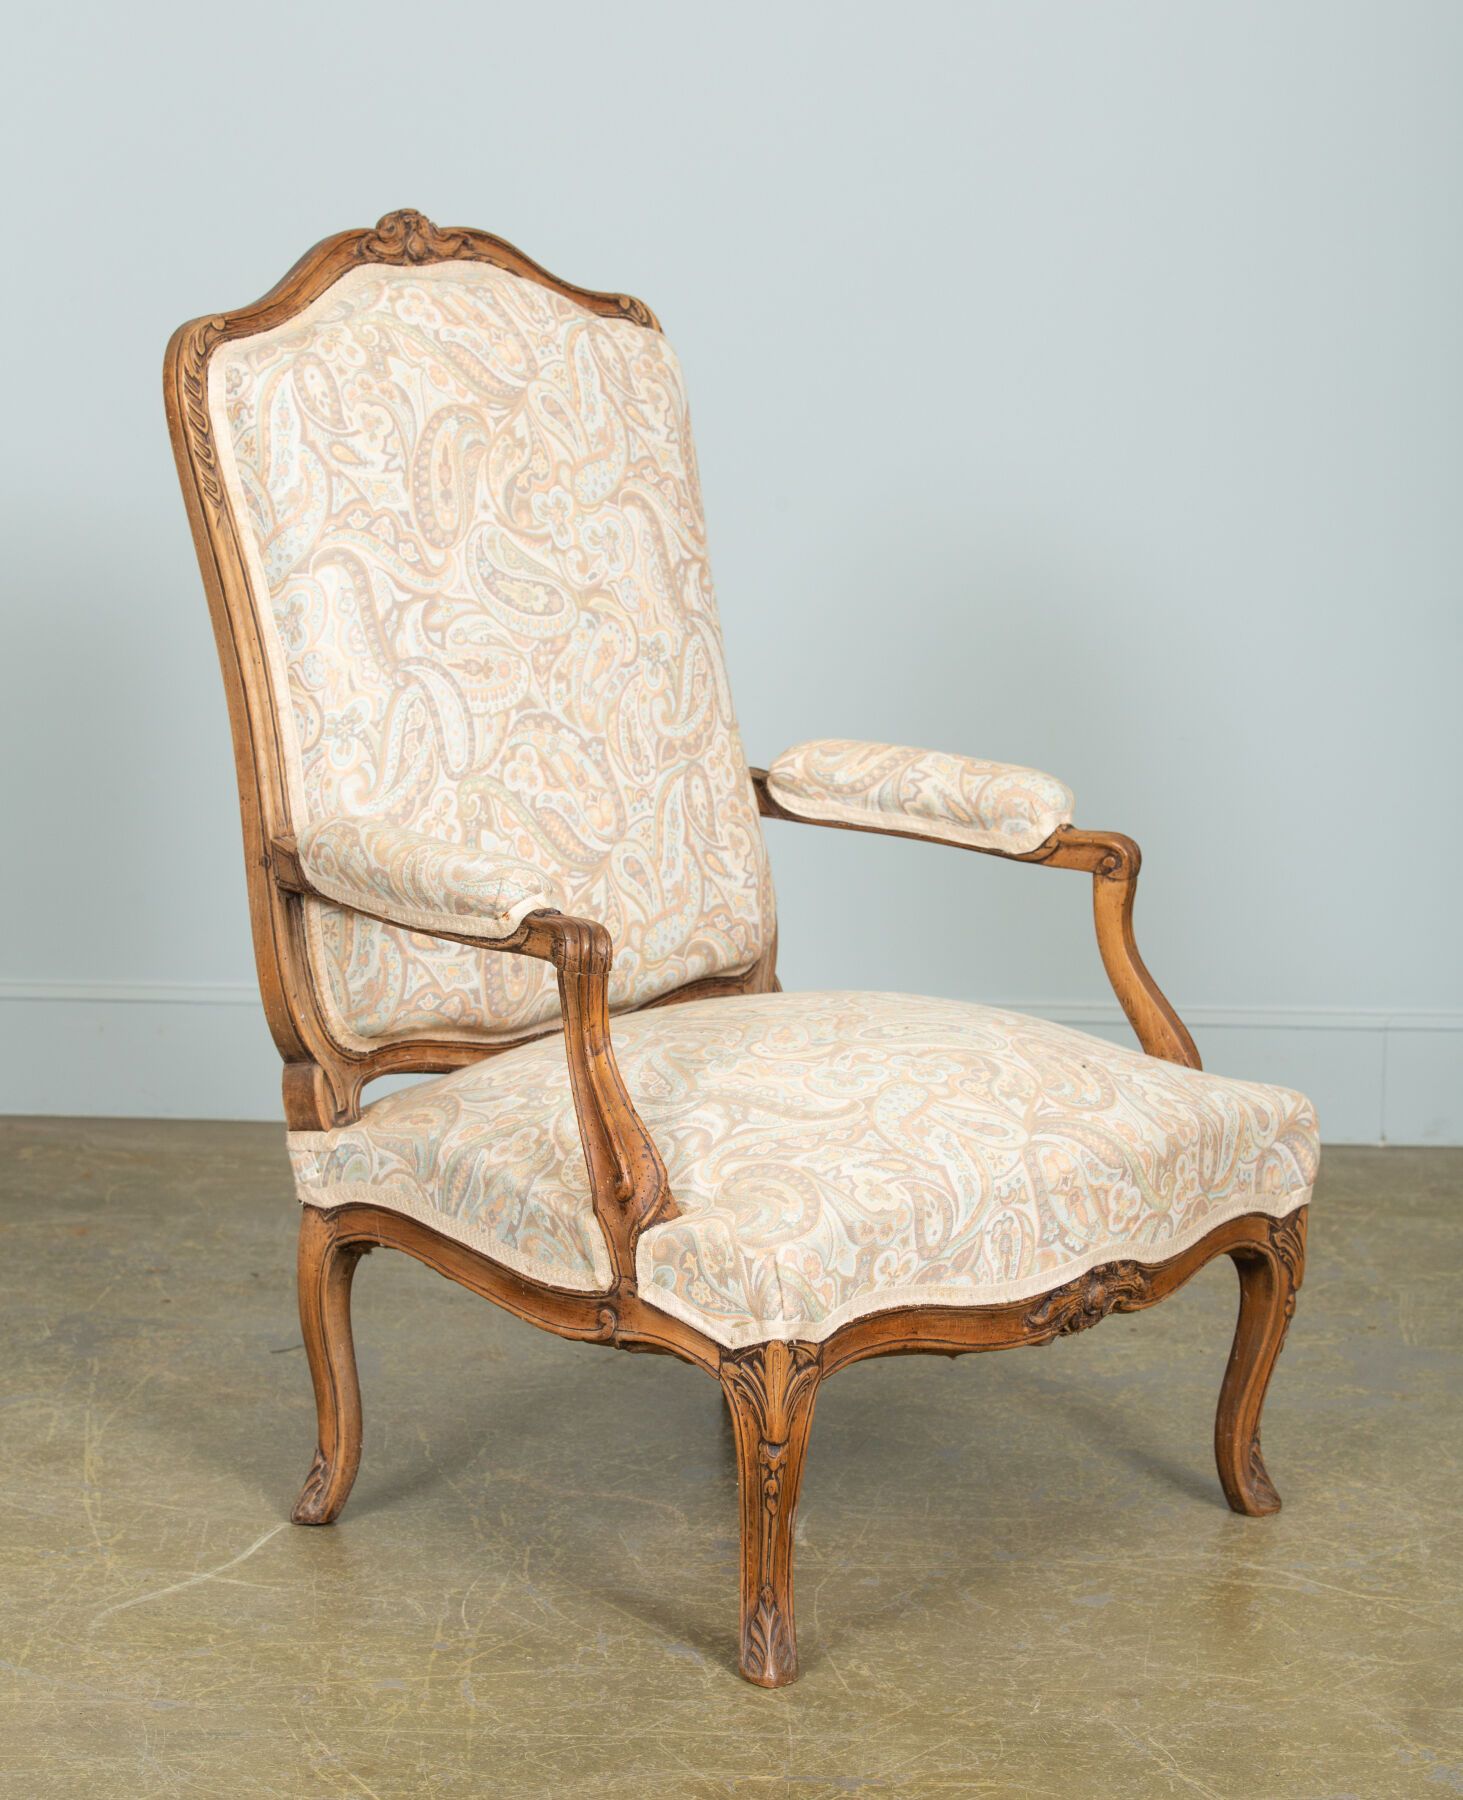 Null 一把成型和雕刻的榉木扶手椅，有一个平坦的靠背。
路易十五时期。
腰带上印有FRC REUZE，代表François Reuze于1743年7月20日接&hellip;